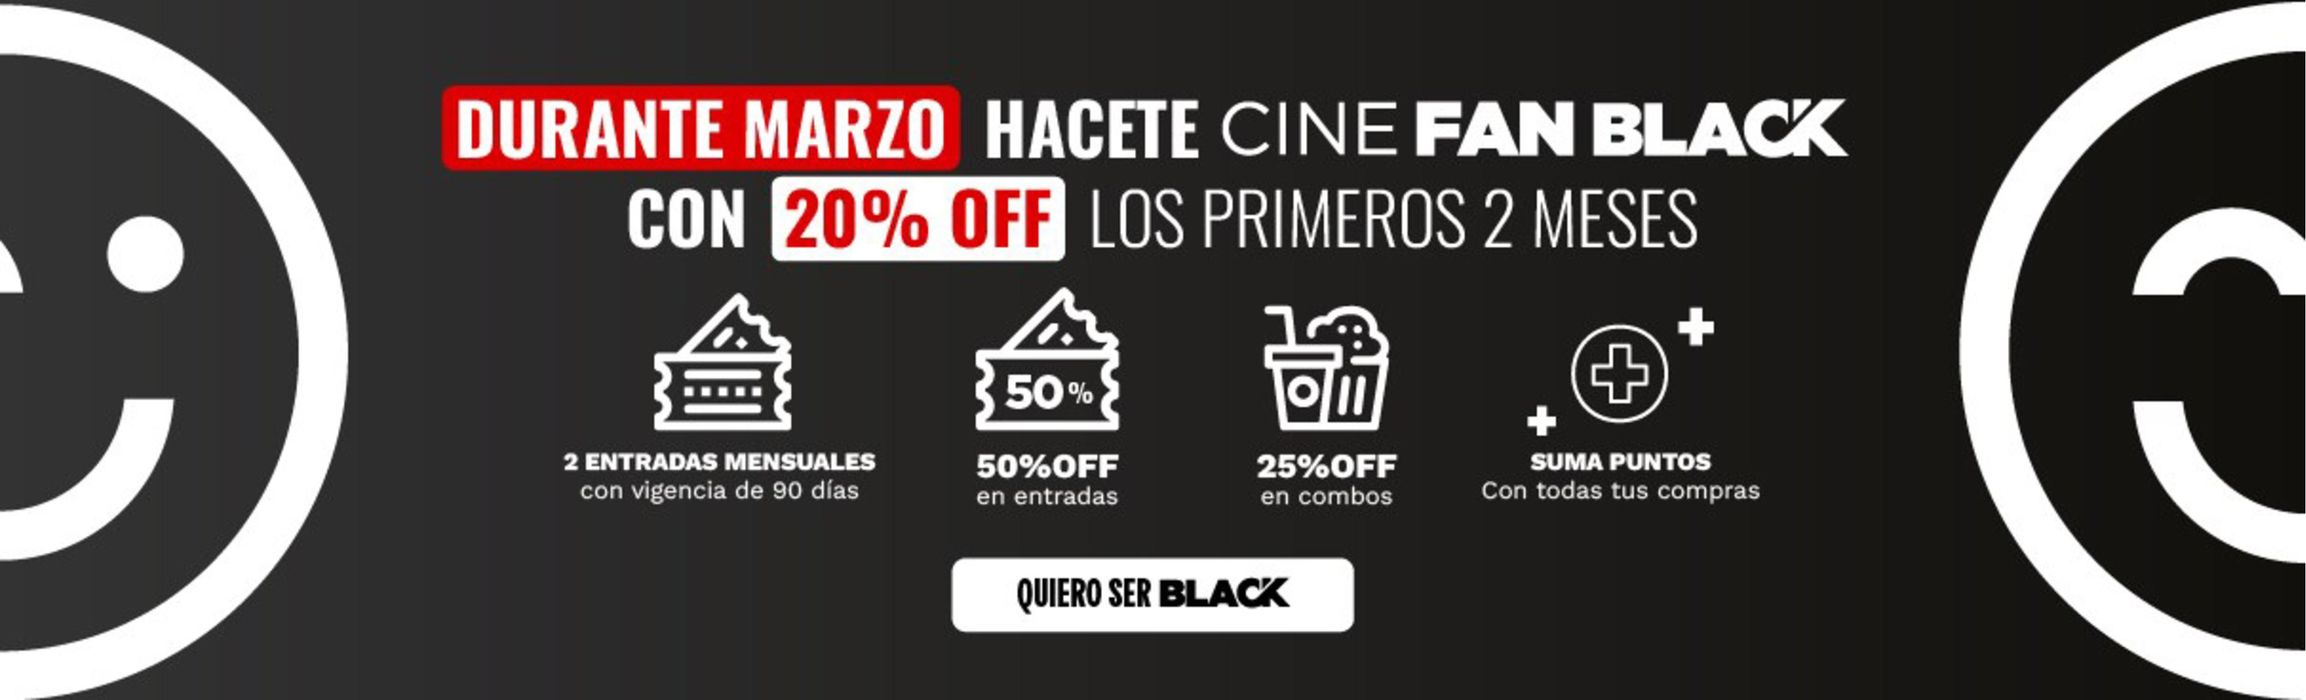 Catálogo Cinemark Hoyts en Quilmes | 50% off en entradas incluye todos los formatos | 21/3/2024 - 31/3/2024